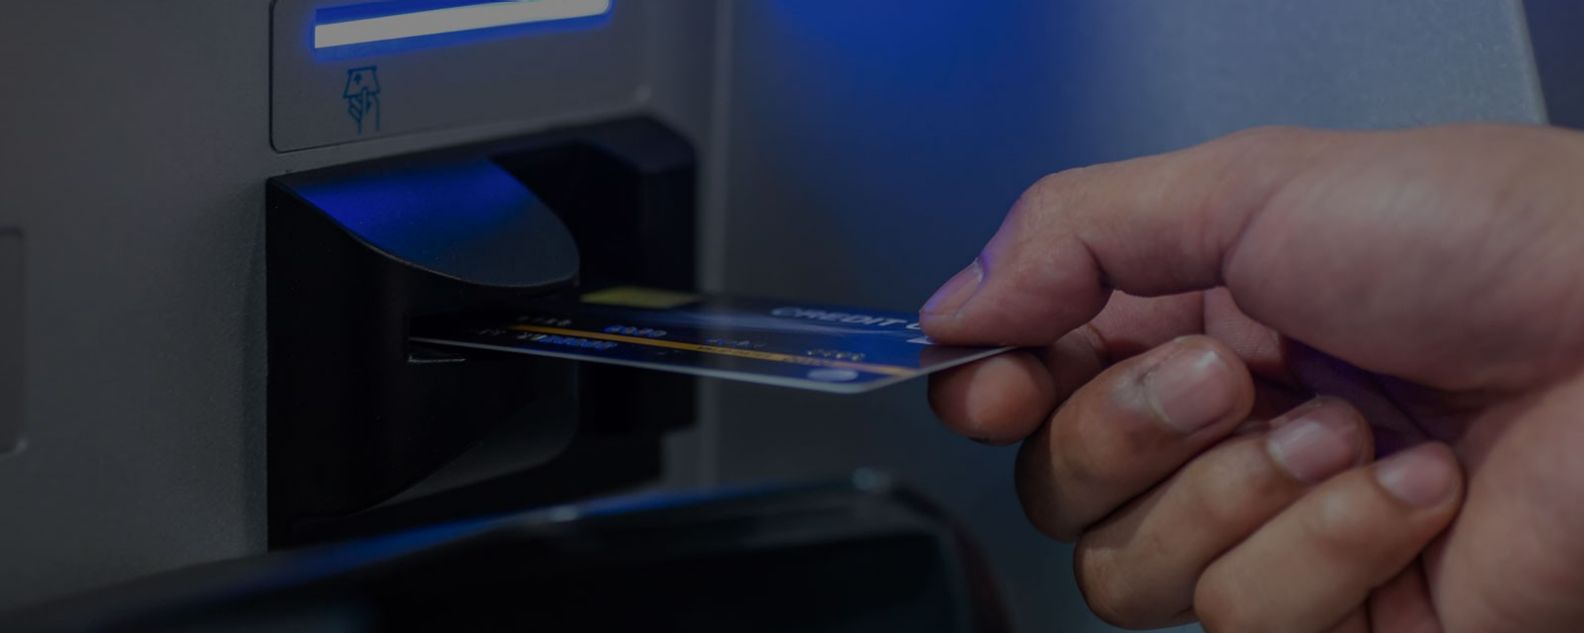 Pria memasukkan kartu debit ke mesin ATM